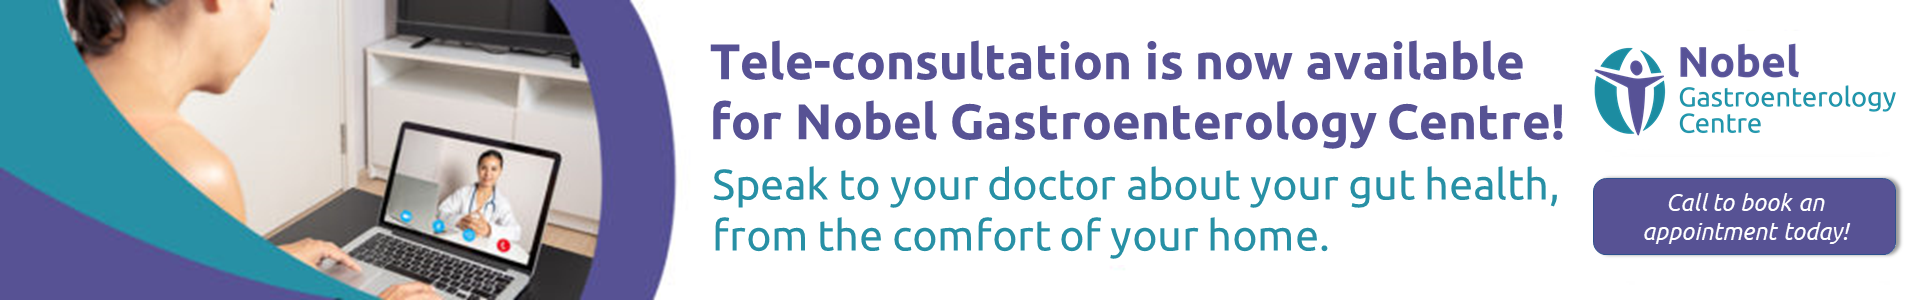 Nobel-Gastro-Tele-consultation